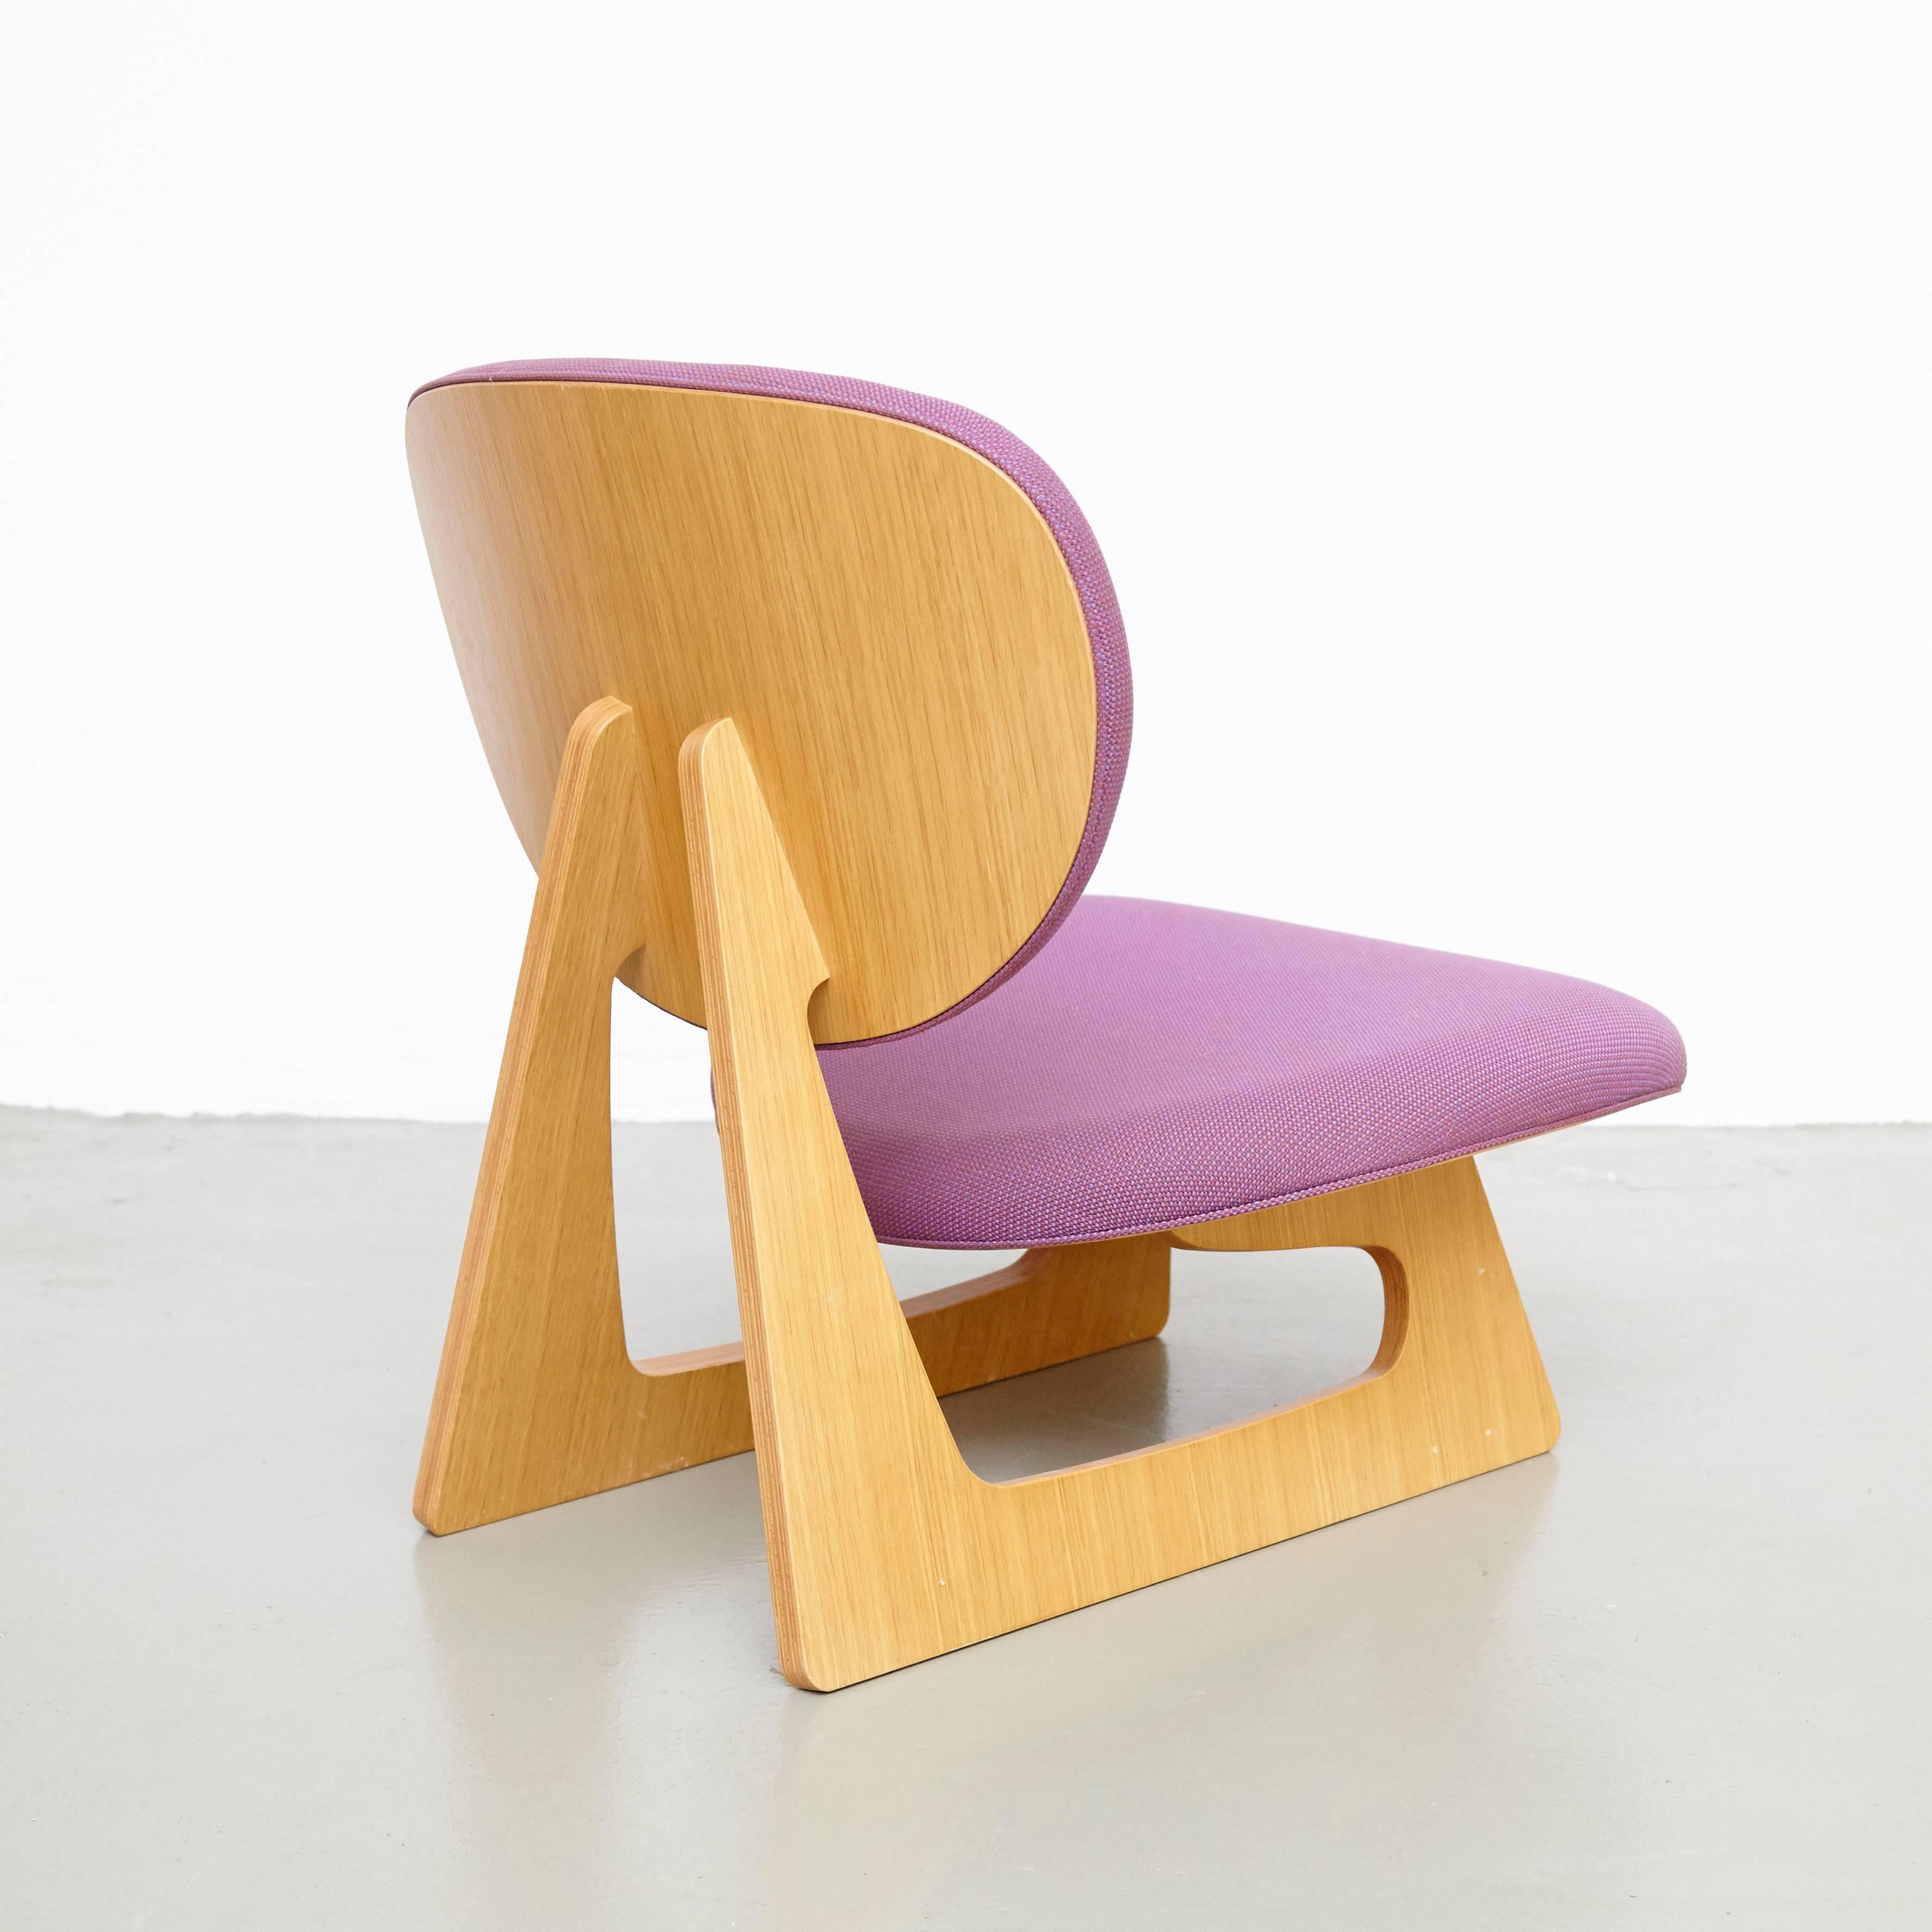 Voici l'exquise chaise longue Junzo Sakakura, une pièce captivante du design des années 1980 créée par le célèbre architecte et designer japonais Junzo Sakakura. Fabriquée par Tendo au Japon, cette chaise longue présente l'équilibre parfait entre la